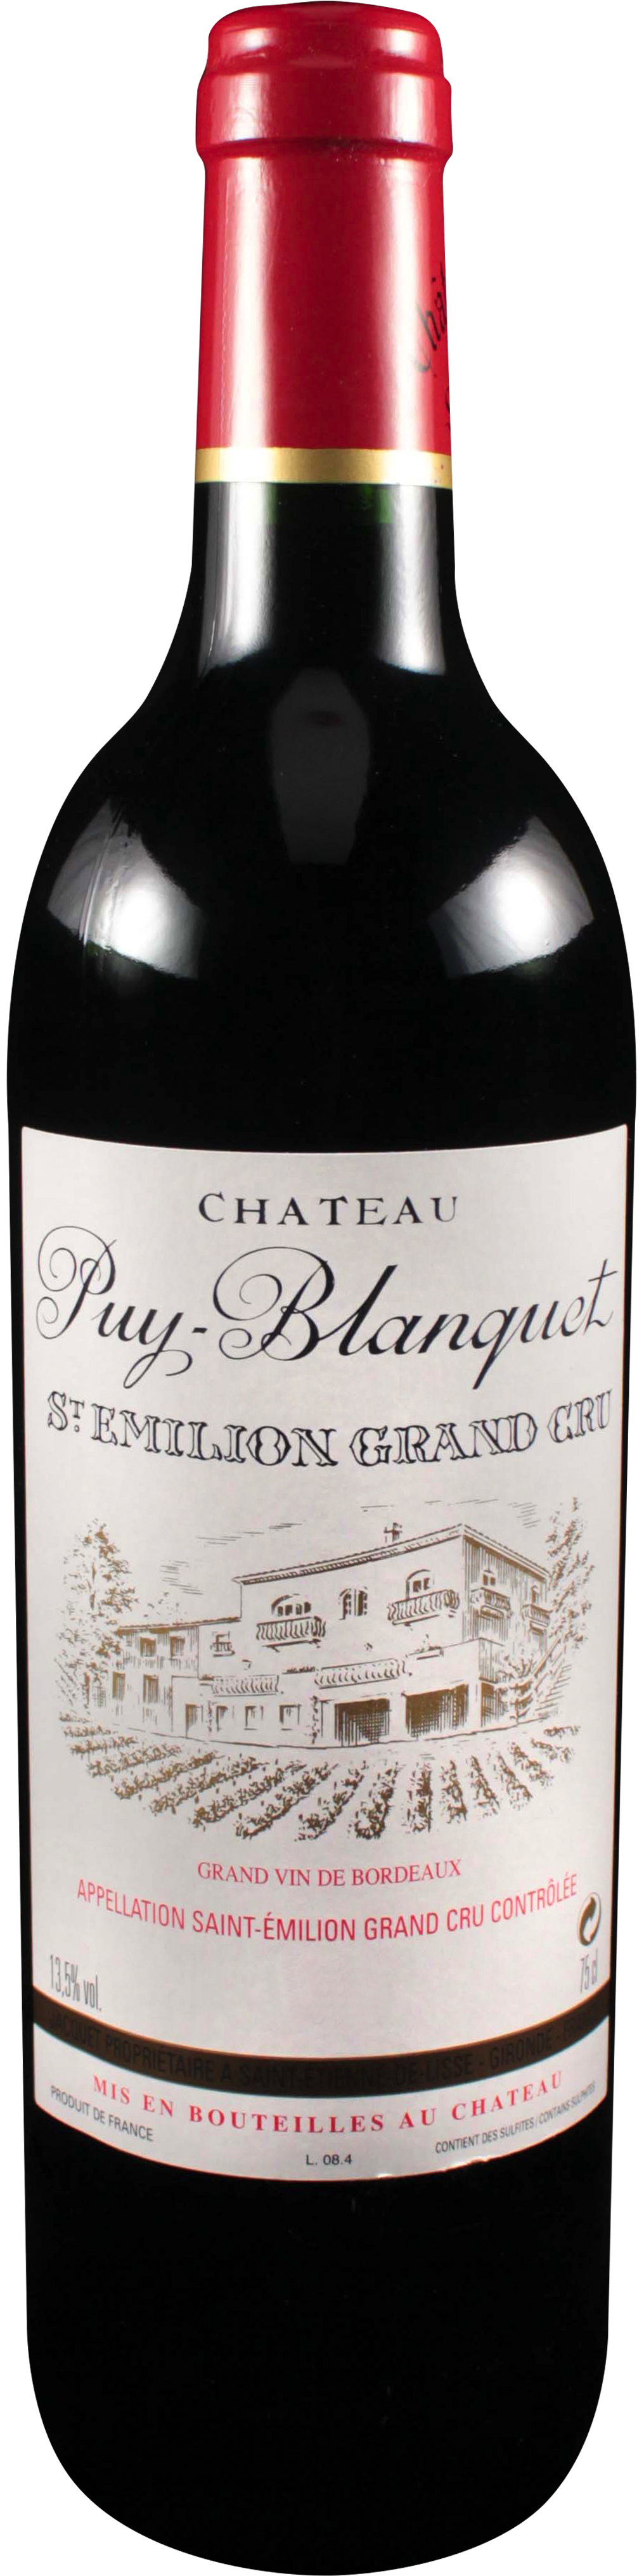 Bottle shot of 2006 Château Puy Blanquet, St Emilion